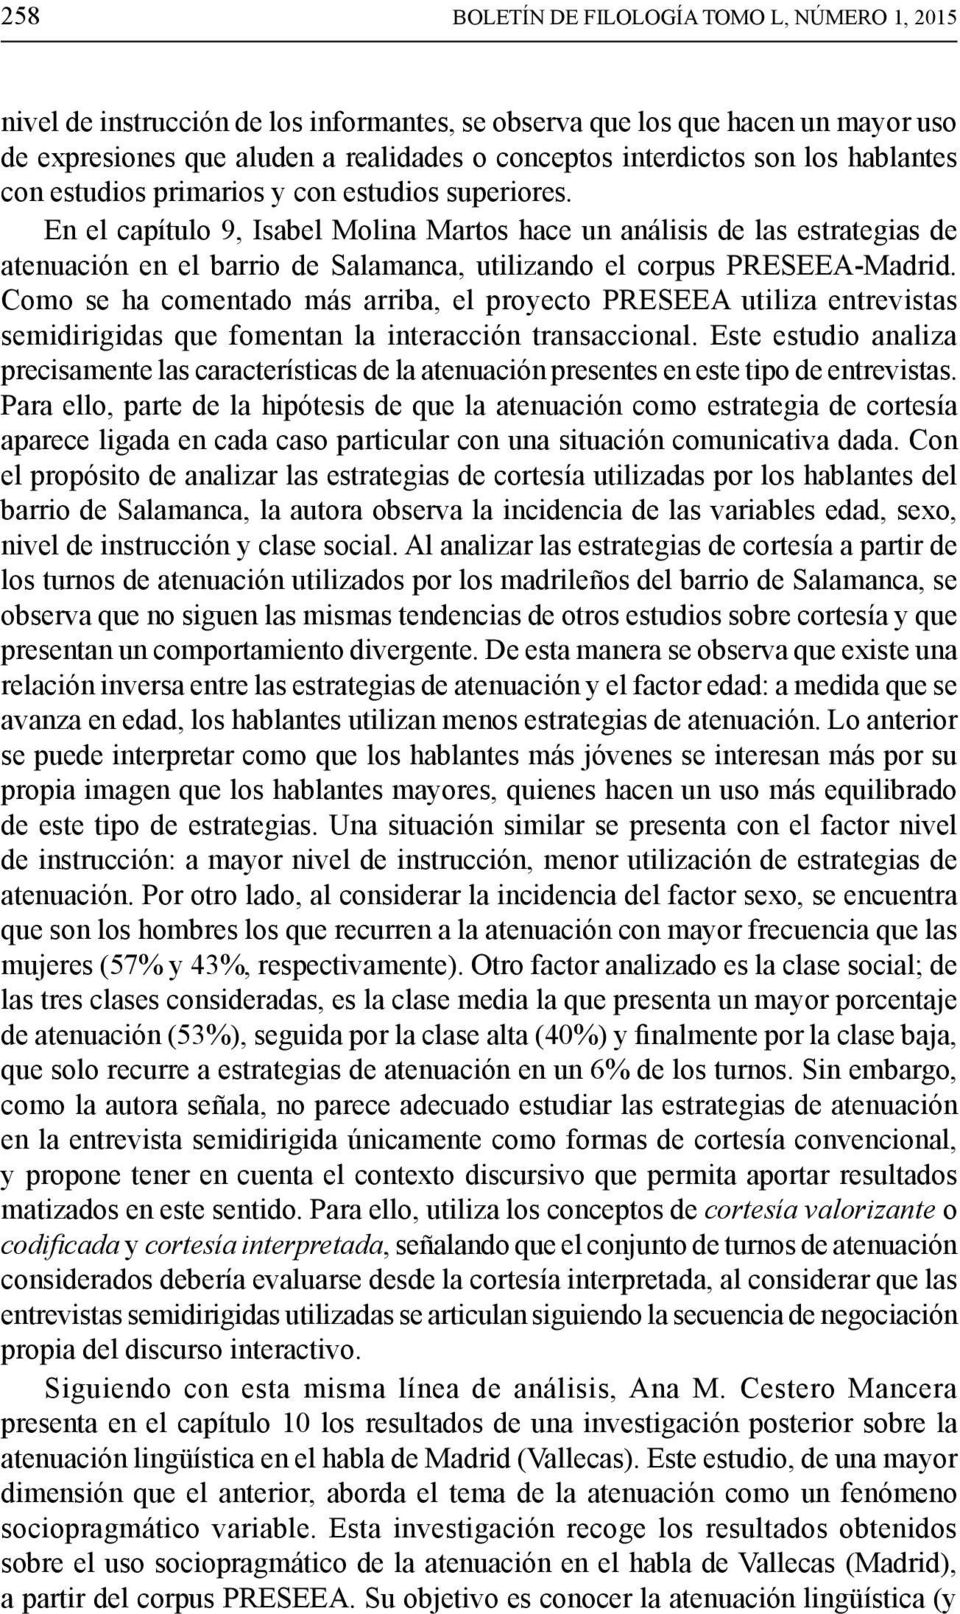 En el capítulo 9, Isabel Molina Martos hace un análisis de las estrategias de atenuación en el barrio de Salamanca, utilizando el corpus PRESEEA-Madrid.